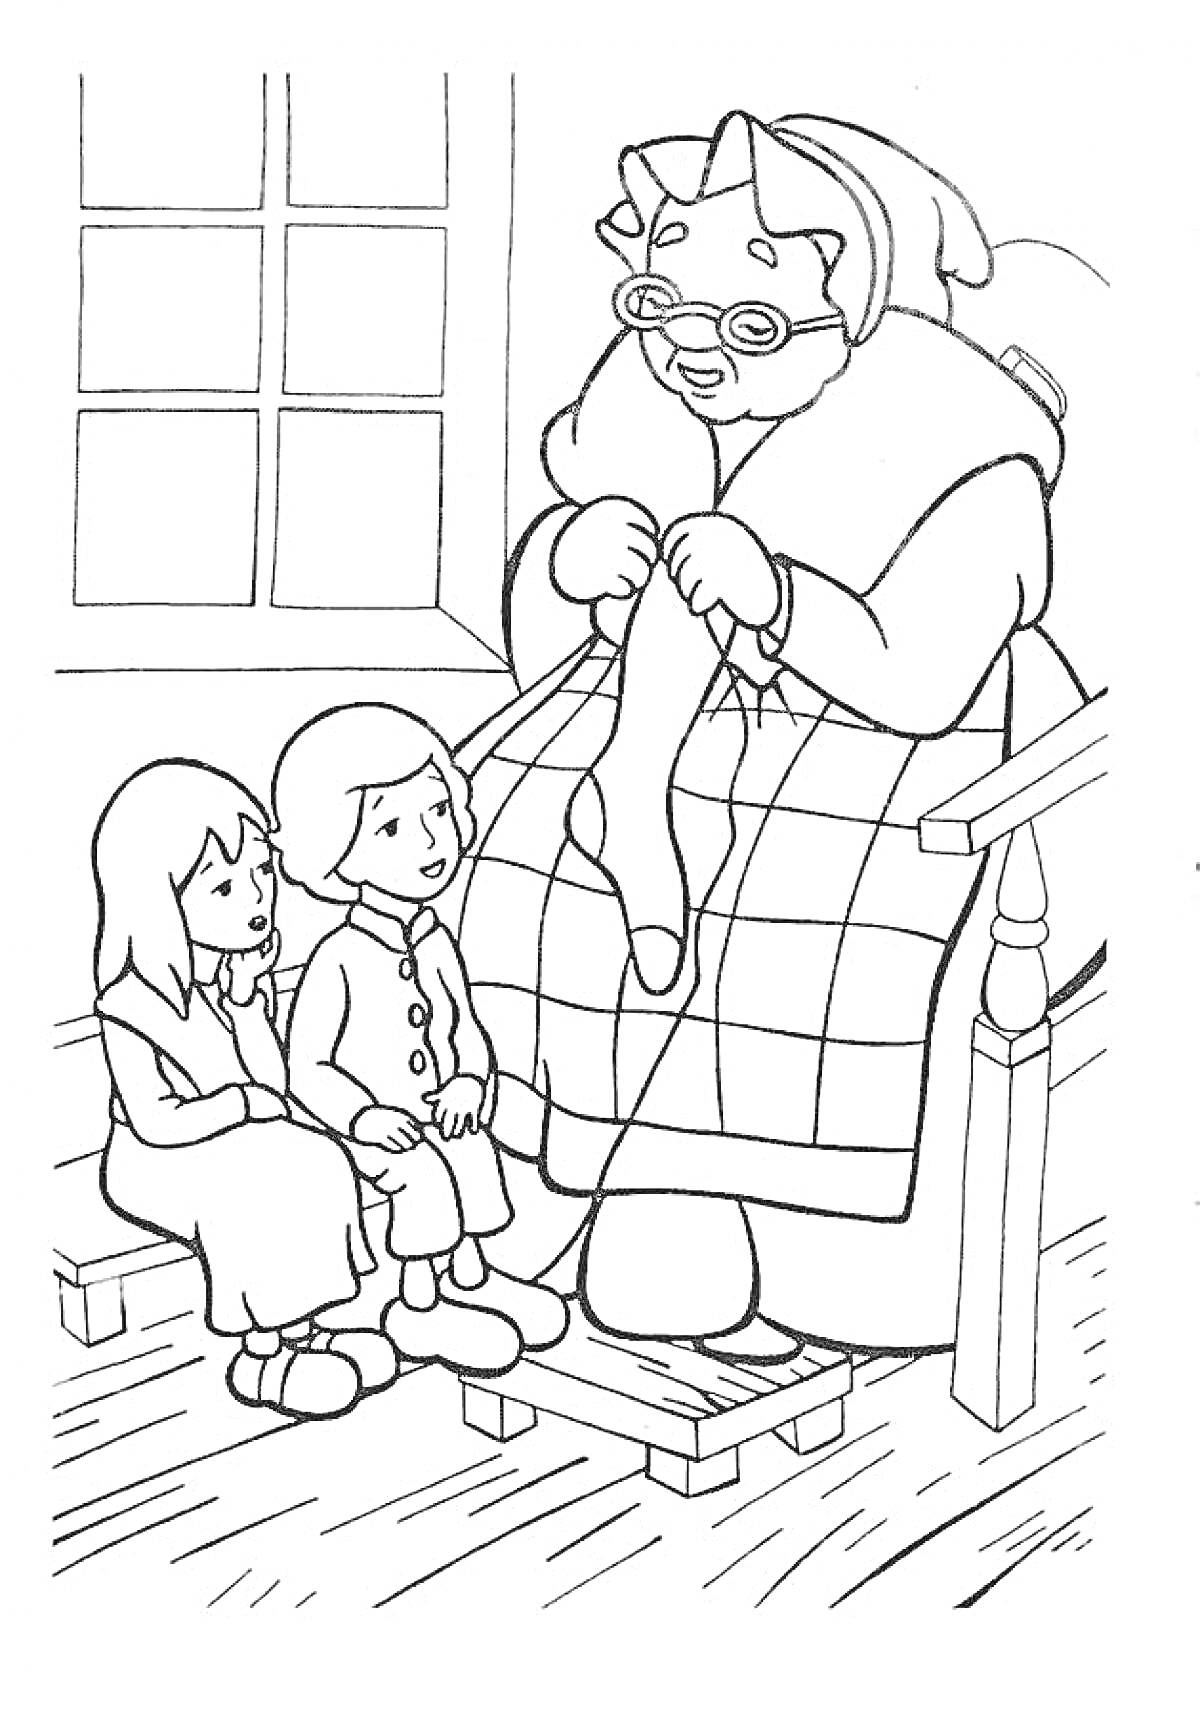 Раскраска Бабушка в кресле качалке вяжет носок, дети сидят рядом, окно на заднем плане